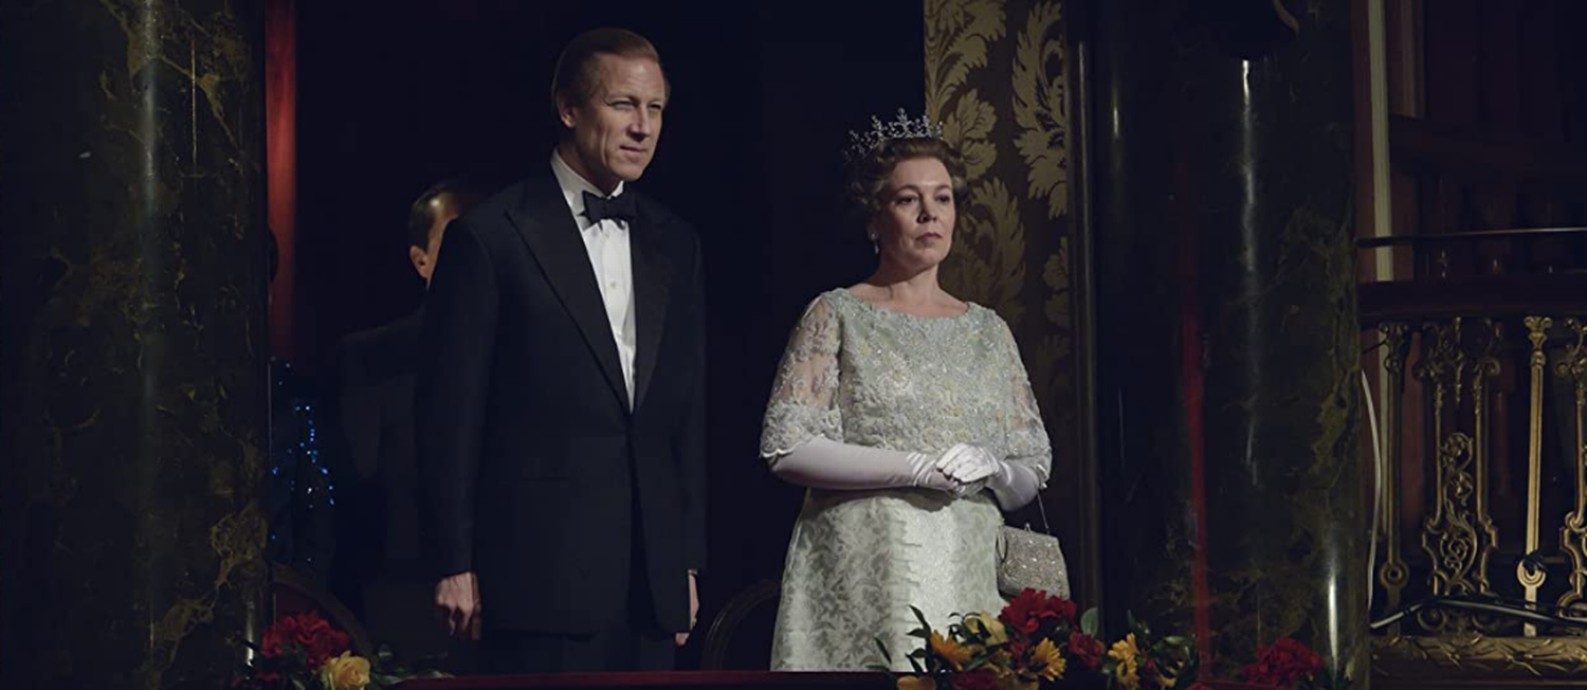 Tobias Menzies e Olivia Collman como o Príncipe Phillip e a rainha Elizabeth, em 'The crown' Foto: Reprodução